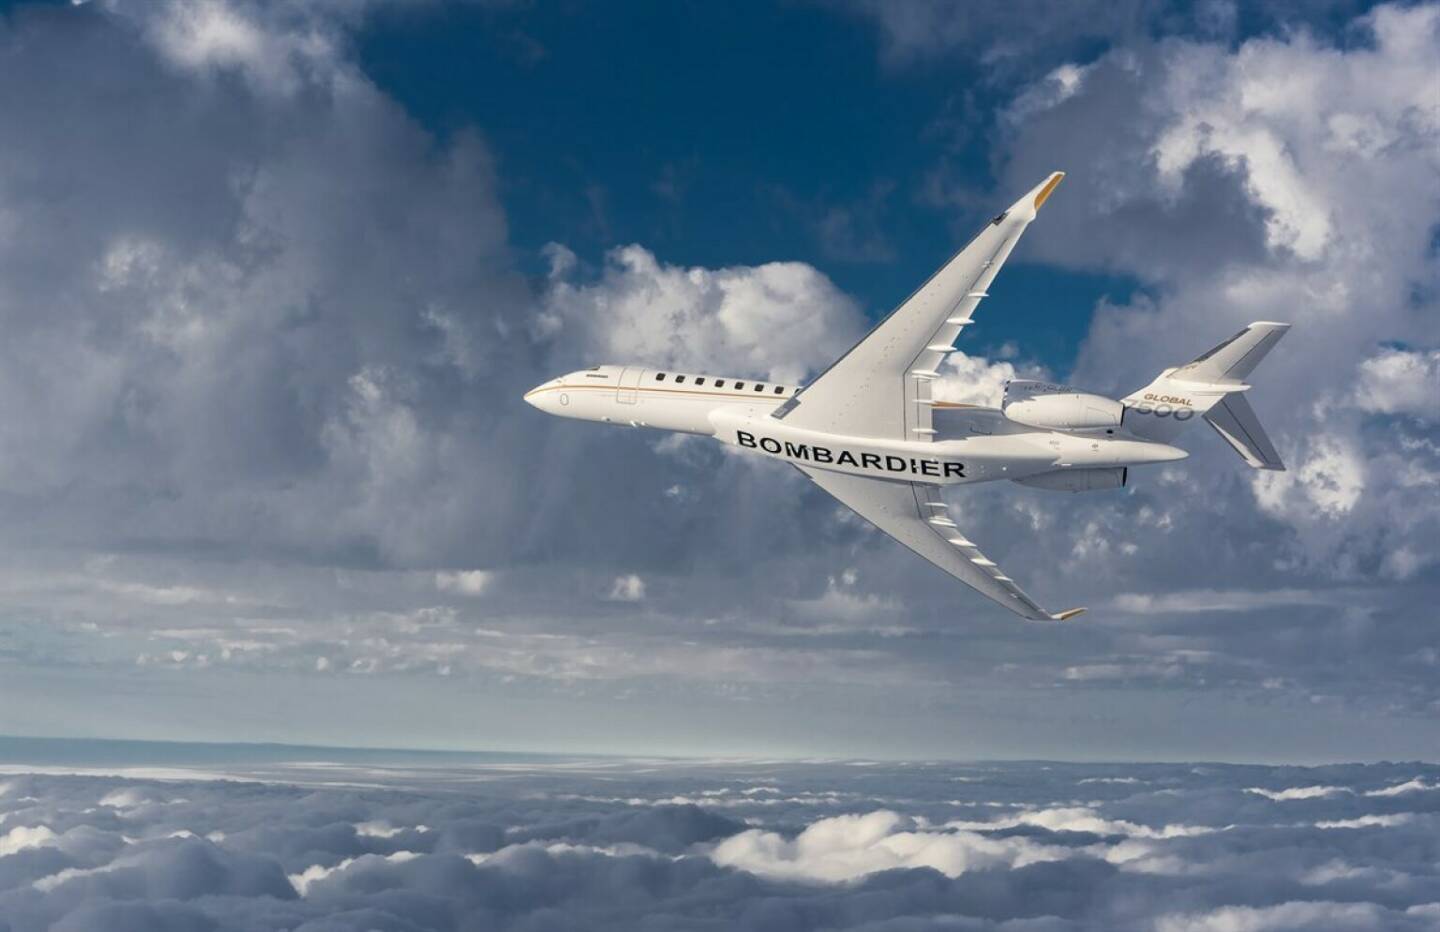 Bombardier Global 7500
FACC wird vom kanadischen Flugzeughersteller Bombardier mit dem begehrten Diamond Supplier Zertifikat für die Flügel-Rumpf-Verkleidungen für die Modelle Global 7500 (im Bild) und die Challenger 350 ausgezeichnet.
Fotorechte: © Bombardier